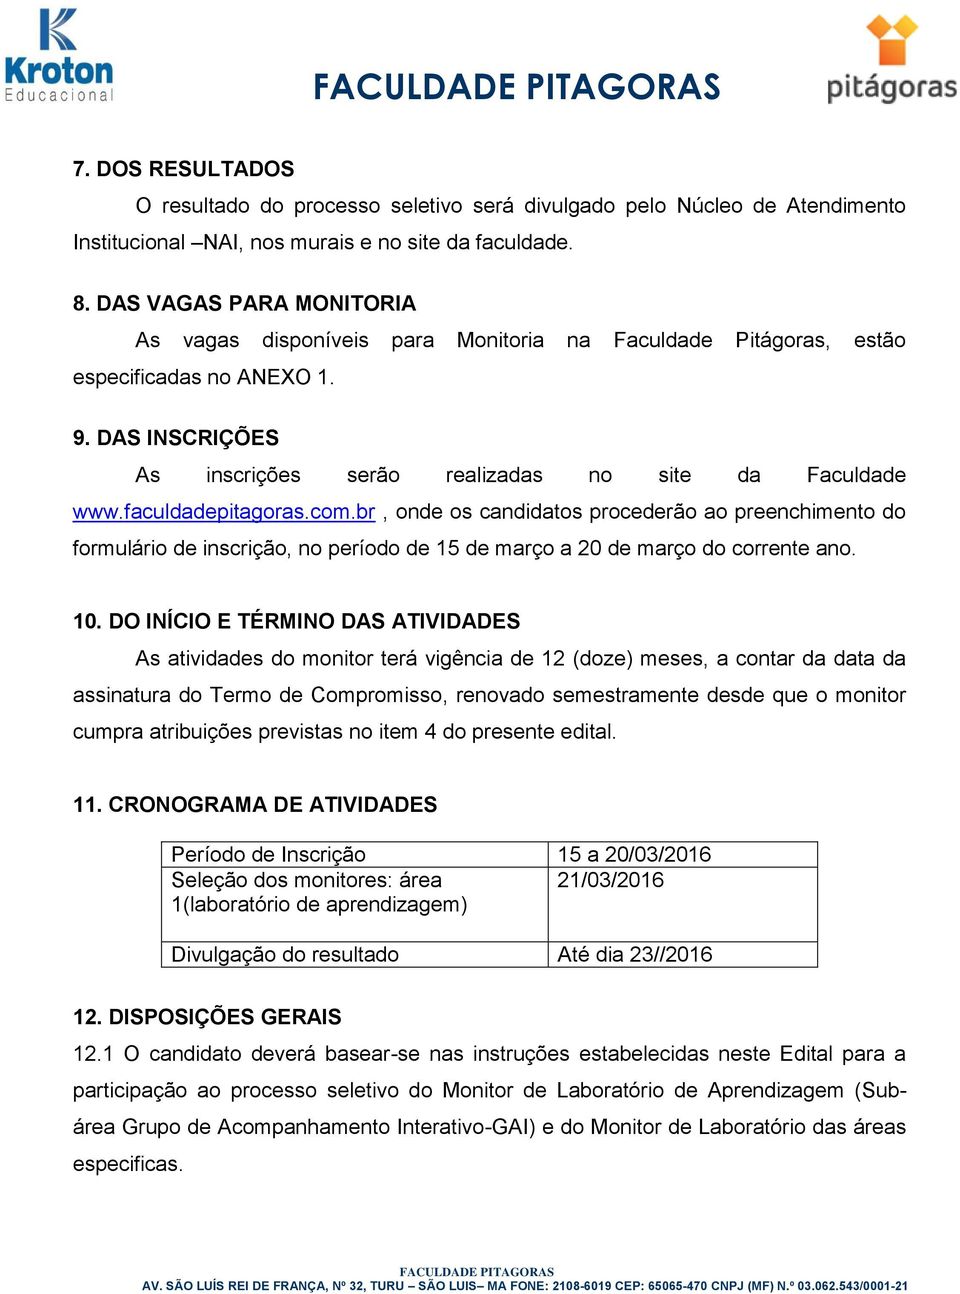 faculdadepitagoras.com.br, onde os candidatos procederão ao preenchimento do formulário de inscrição, no período de 15 de março a 0 de março do corrente ano. 10.